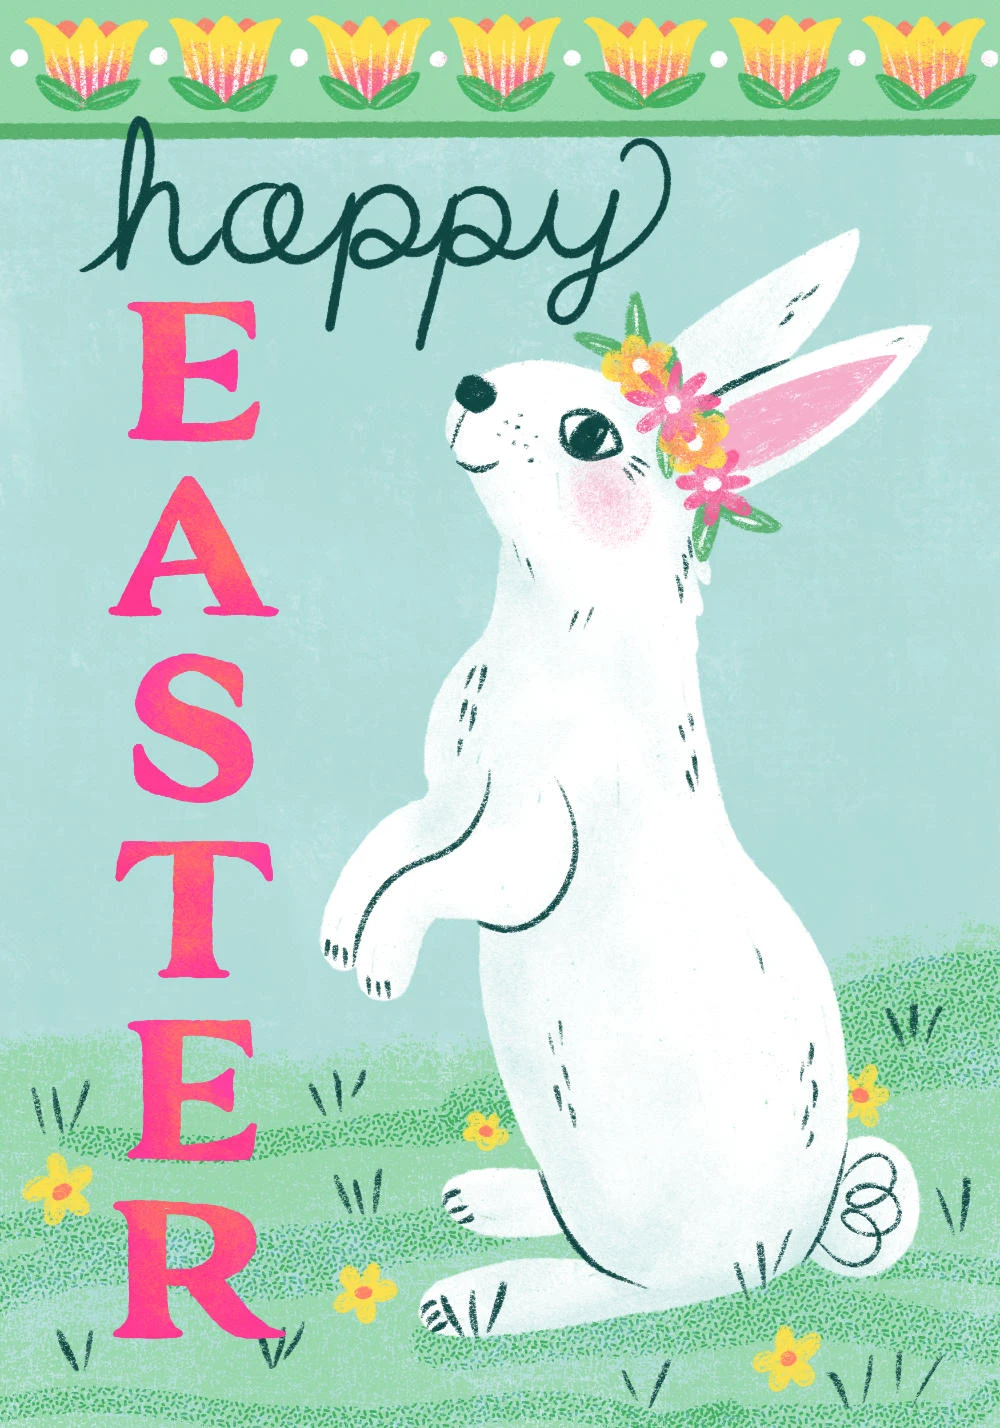 212-webhappy-easterspring-bunny-1704303472059.jpg